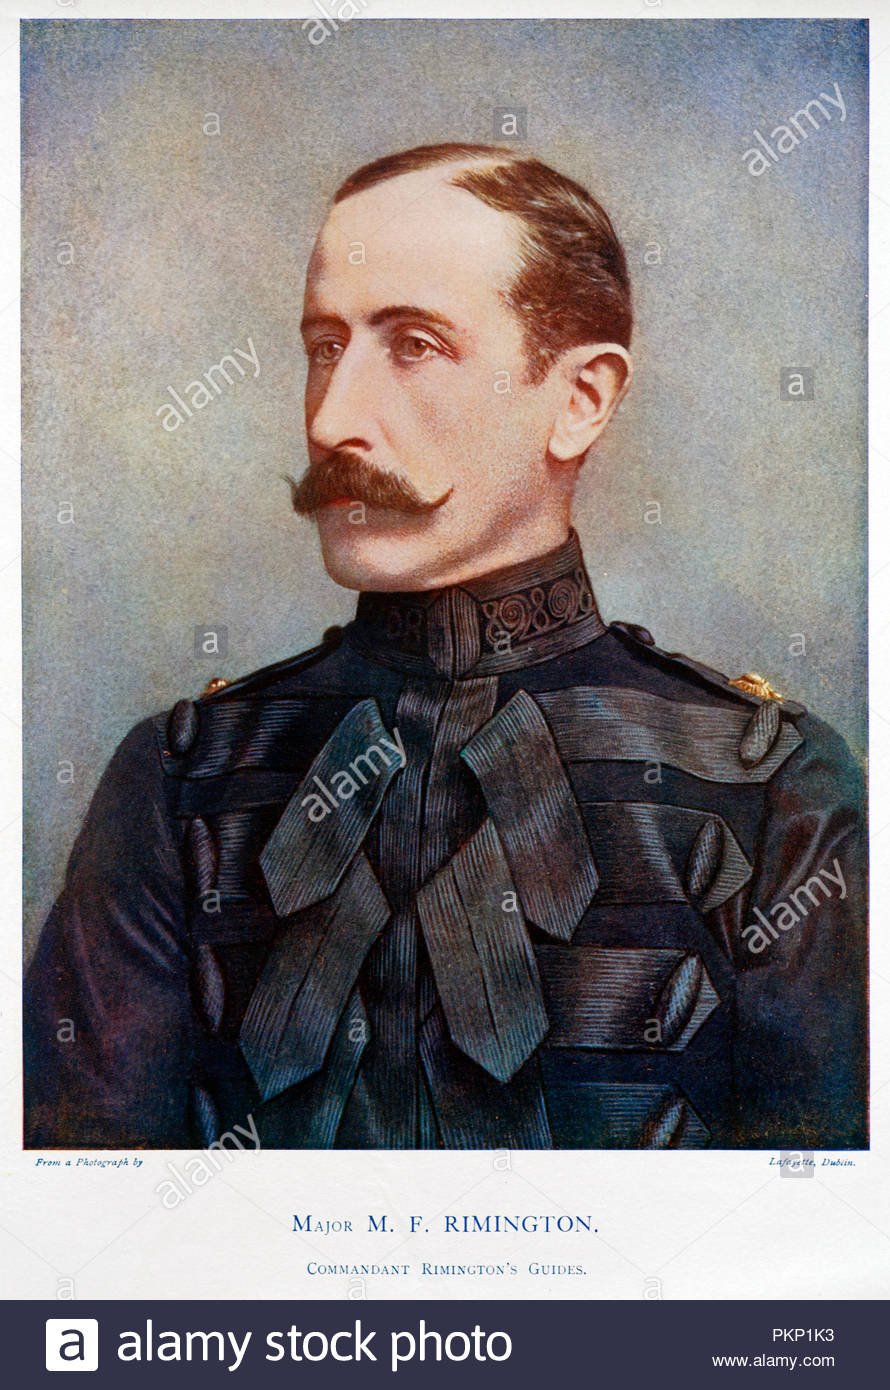 Major Sir Michael Frederic Rimington, KCB, CVO, 1858 - 1928, war ein britischer Offizier in der Armee, die Kavallerie Kräfte im Zweiten Burenkrieg und Ersten Weltkrieg geboten. Farbe Abbildung von 1900 Stockfoto